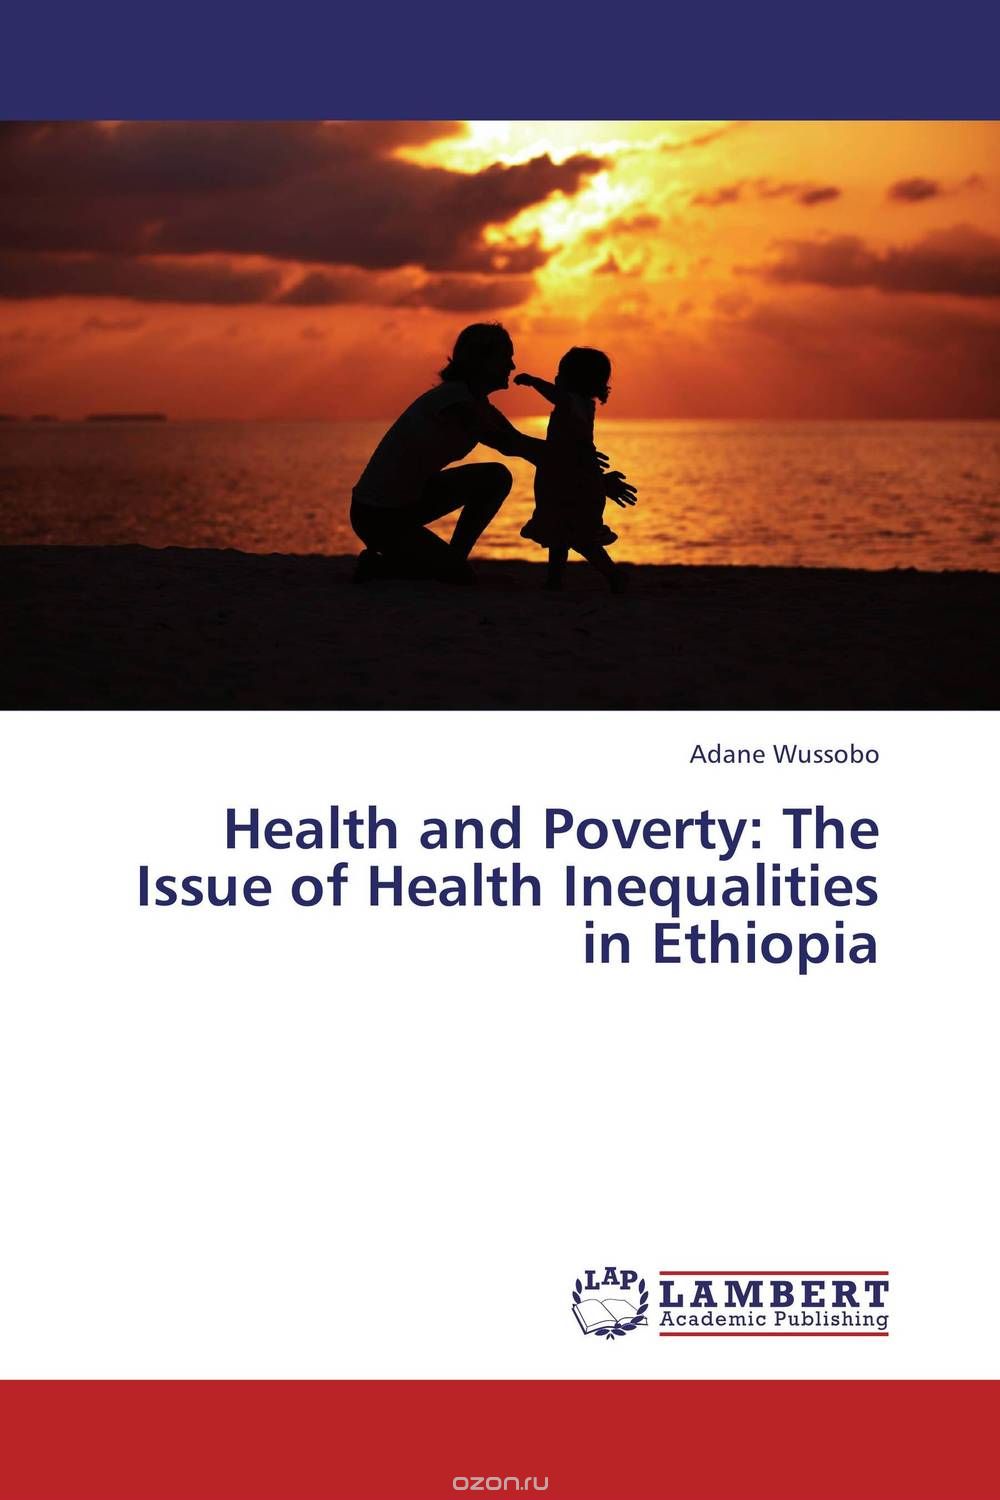 Скачать книгу "Health and Poverty: The Issue of Health Inequalities in Ethiopia"